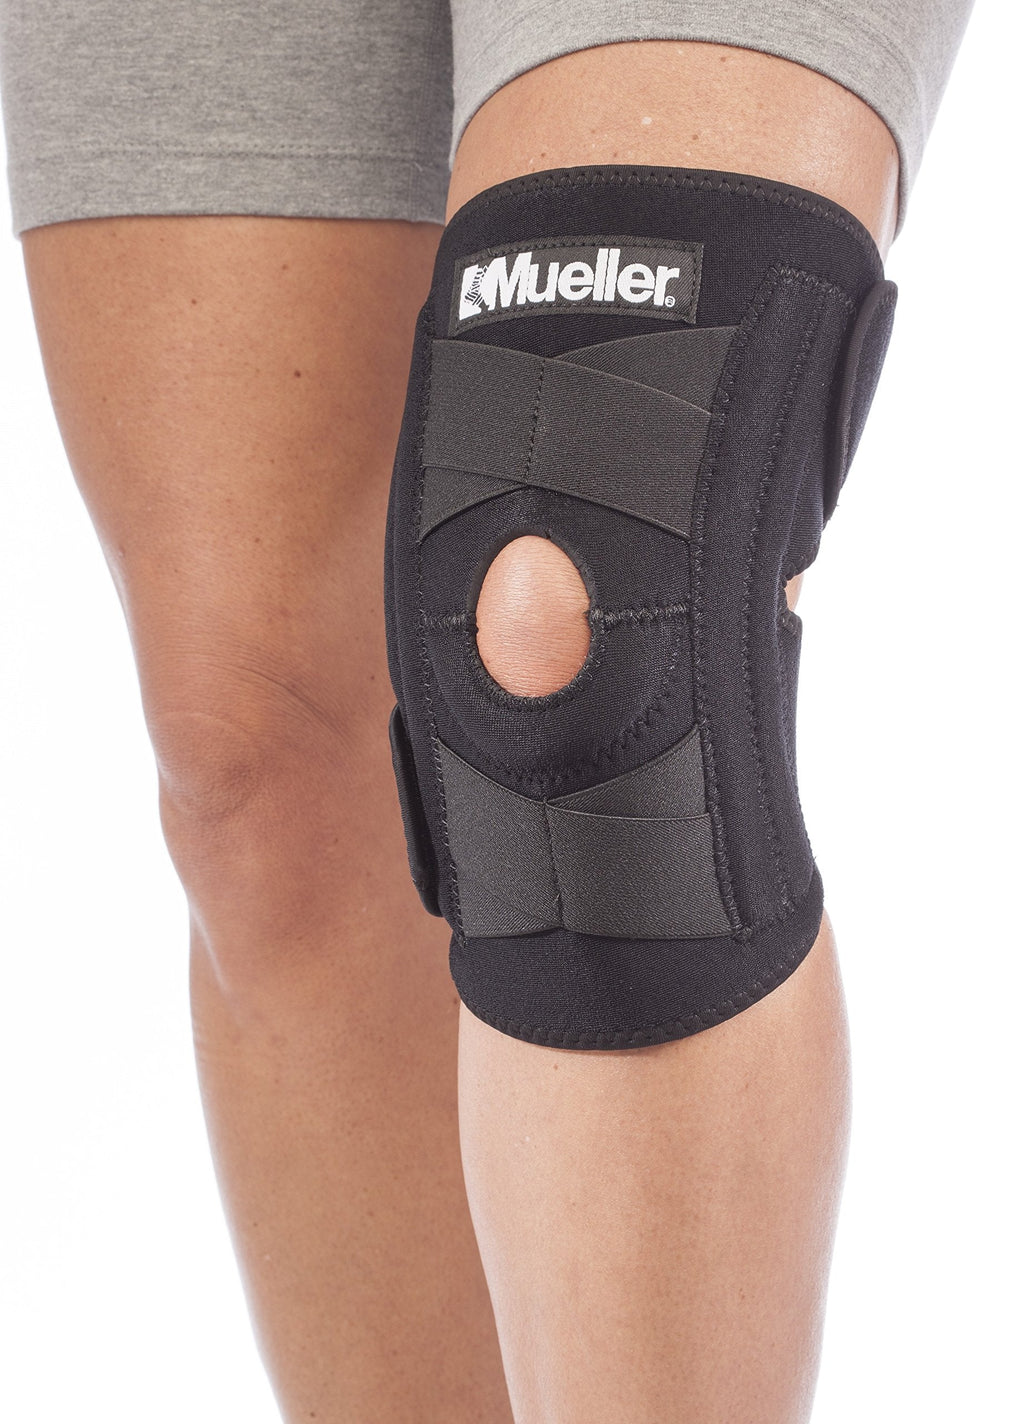 [Australia] - Mueller Sports Medicine Self-Adjusting Knee Stabilizer, For Men and Women, Black, One Size (Pack of 1) 